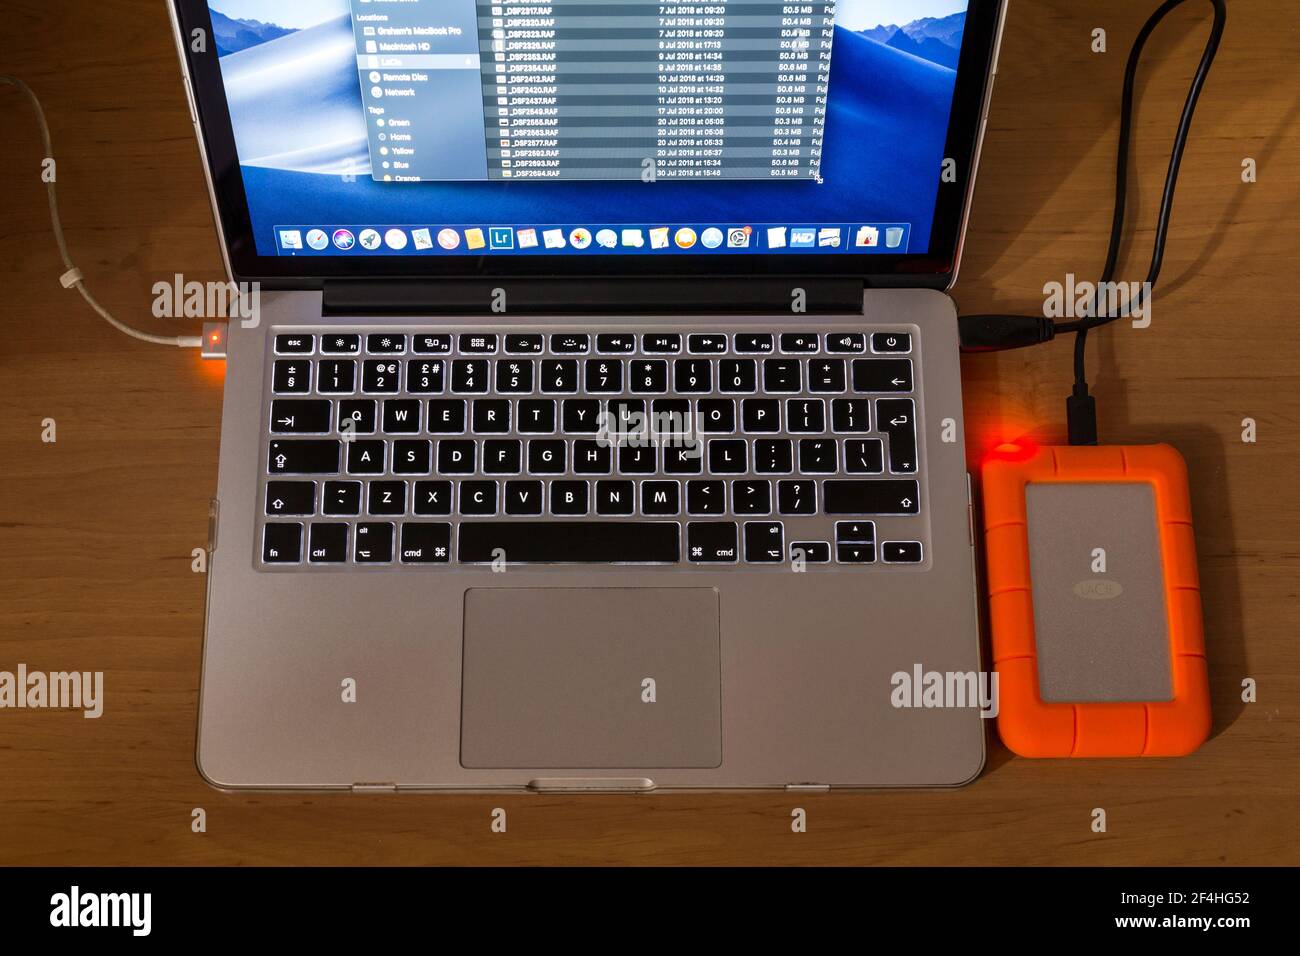 Laptop-Computer mit einer robusten externen LaCie-Festplatte.Sichern von Daten. Stockfoto